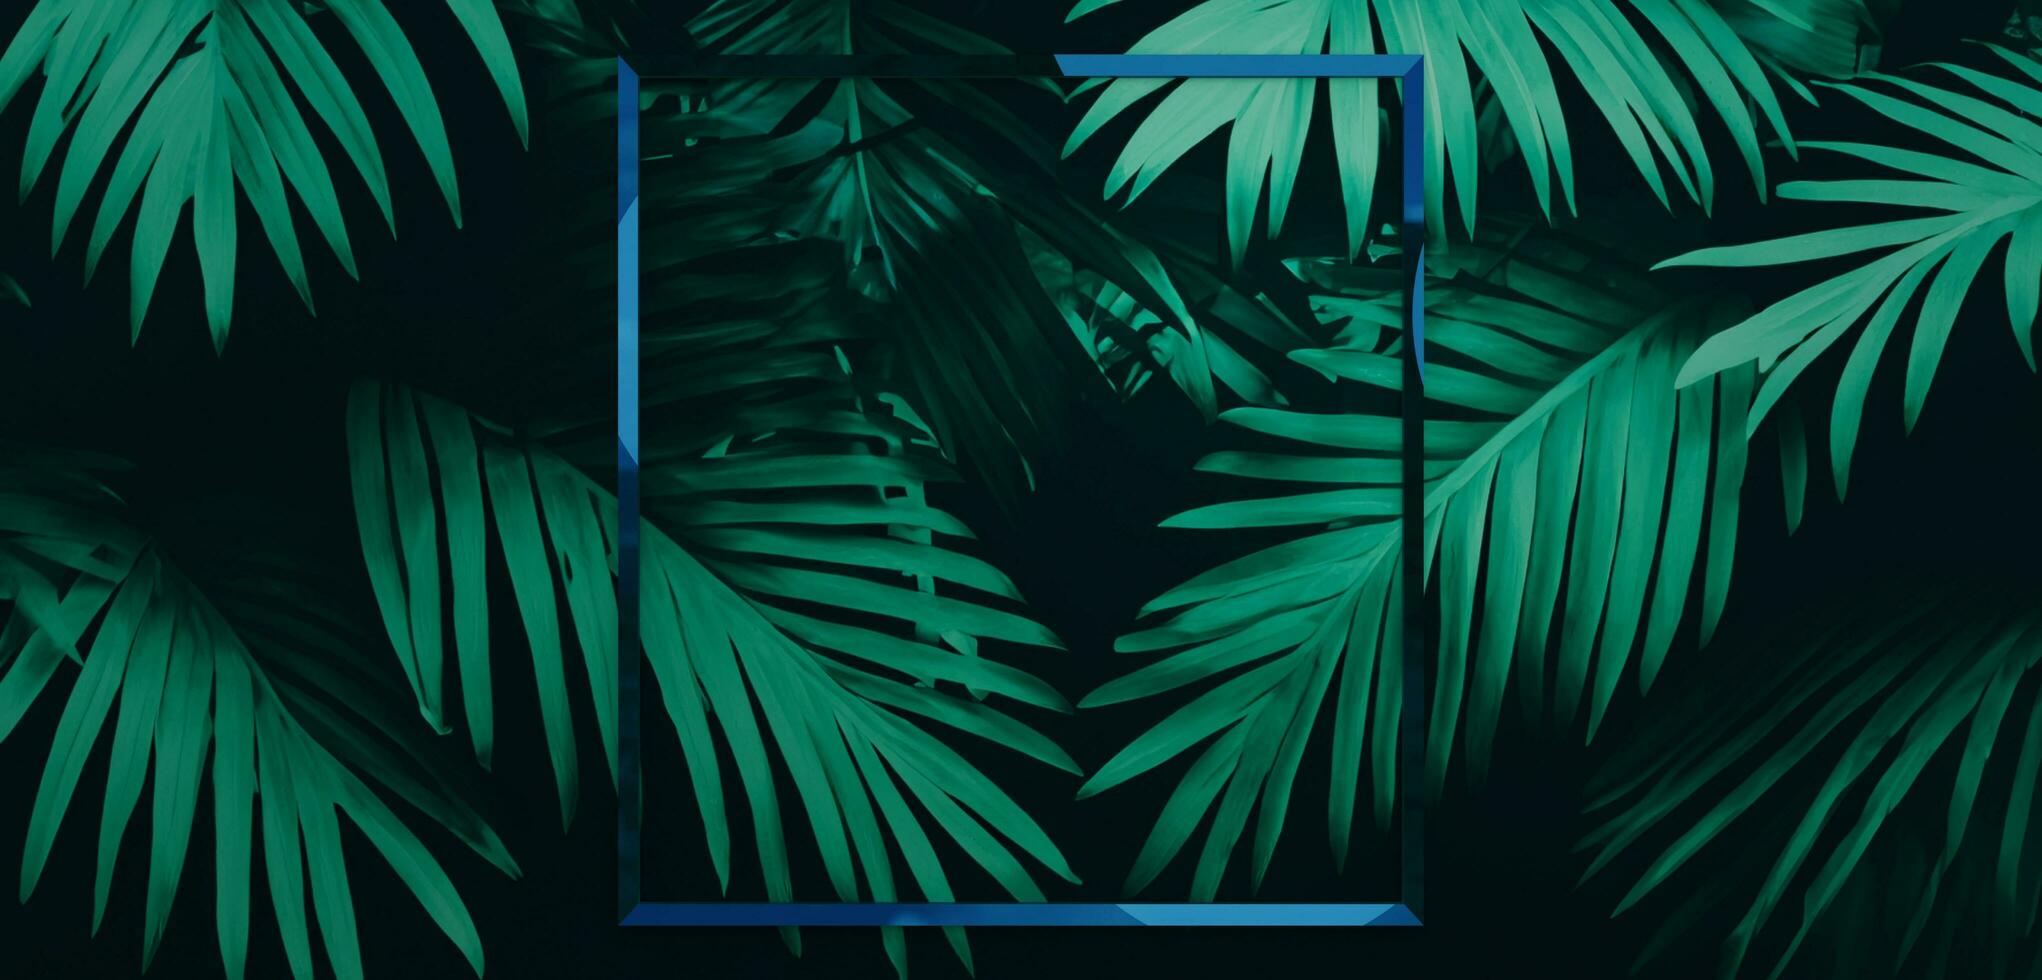 kader en bladeren spathiphyllum cannifolium concept groen abstract structuur met kader natuur achtergrond tropisch bladeren in Azië en Thailand 3d illustratie foto